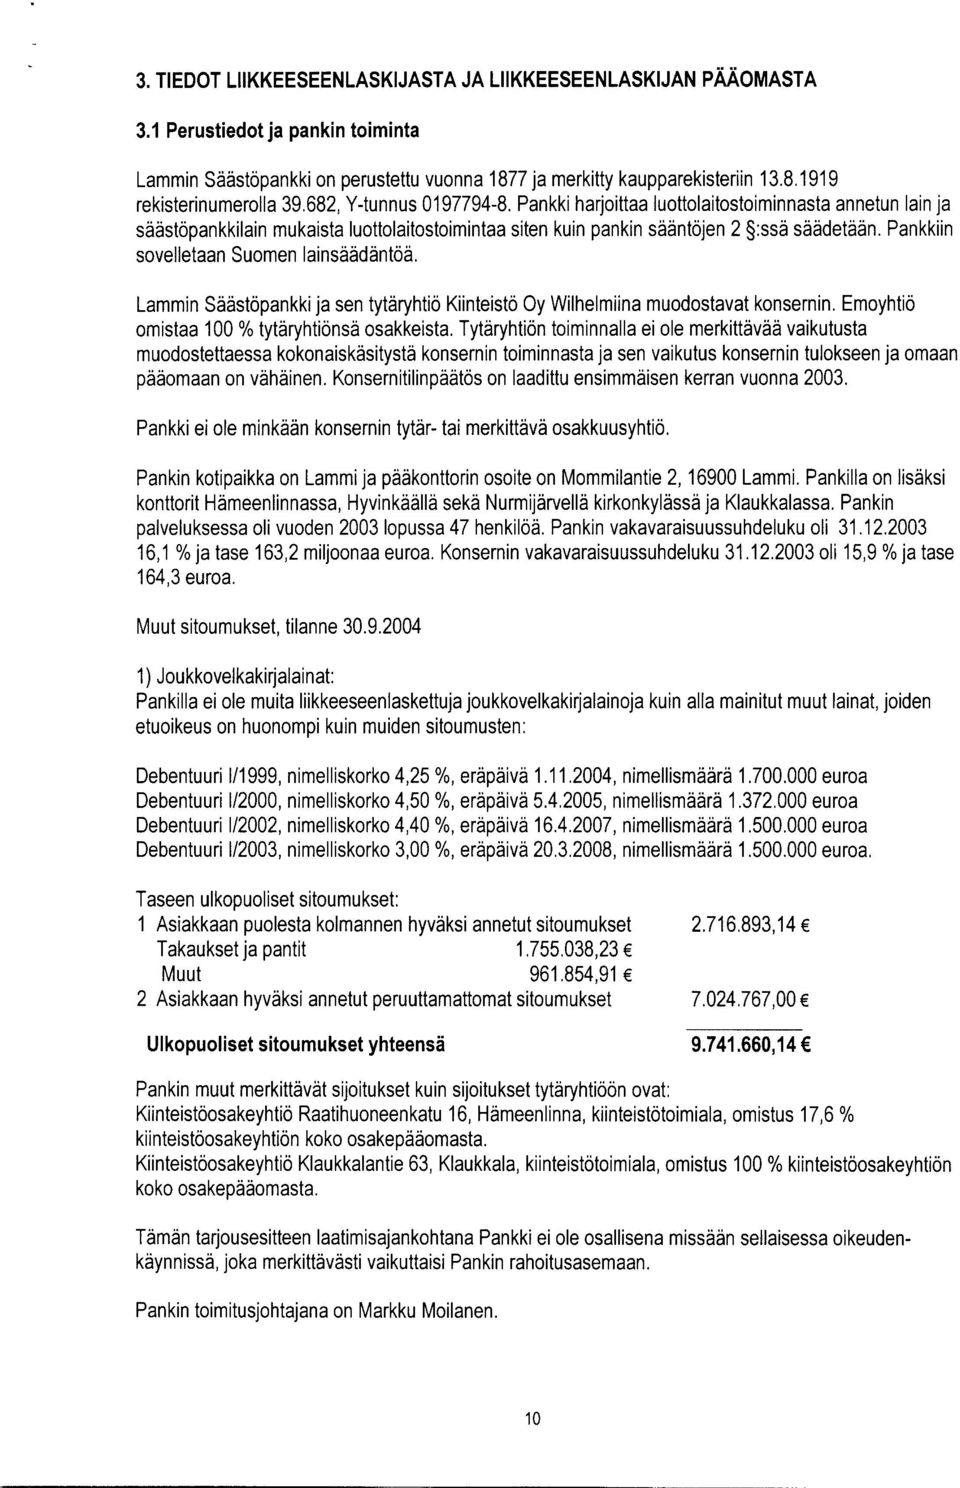 Pankkiin sovelletaan Suomen lainsäädäntöä. Lammin Säästöpankki ja sen tytäryhtiö Kiinteistö Oy Wilhelmiina muodostavat konsernin. Emoyhtiö omistaa 100 % tytäryhtiönsä osakkeista.